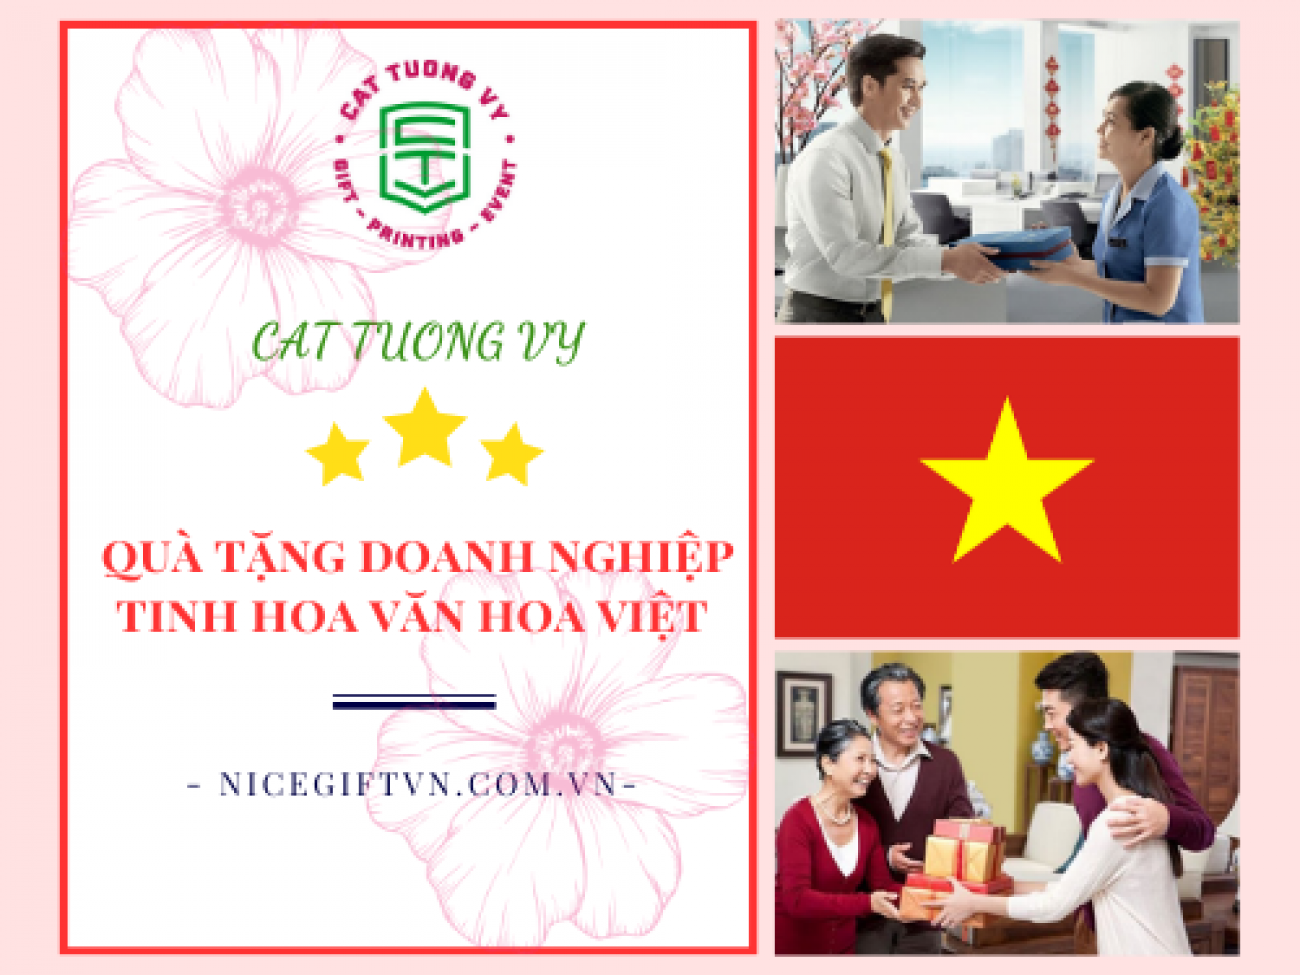 Quà tặng doanh nghiệp là nét đẹp truyền thống của dân tộc Việt Nam